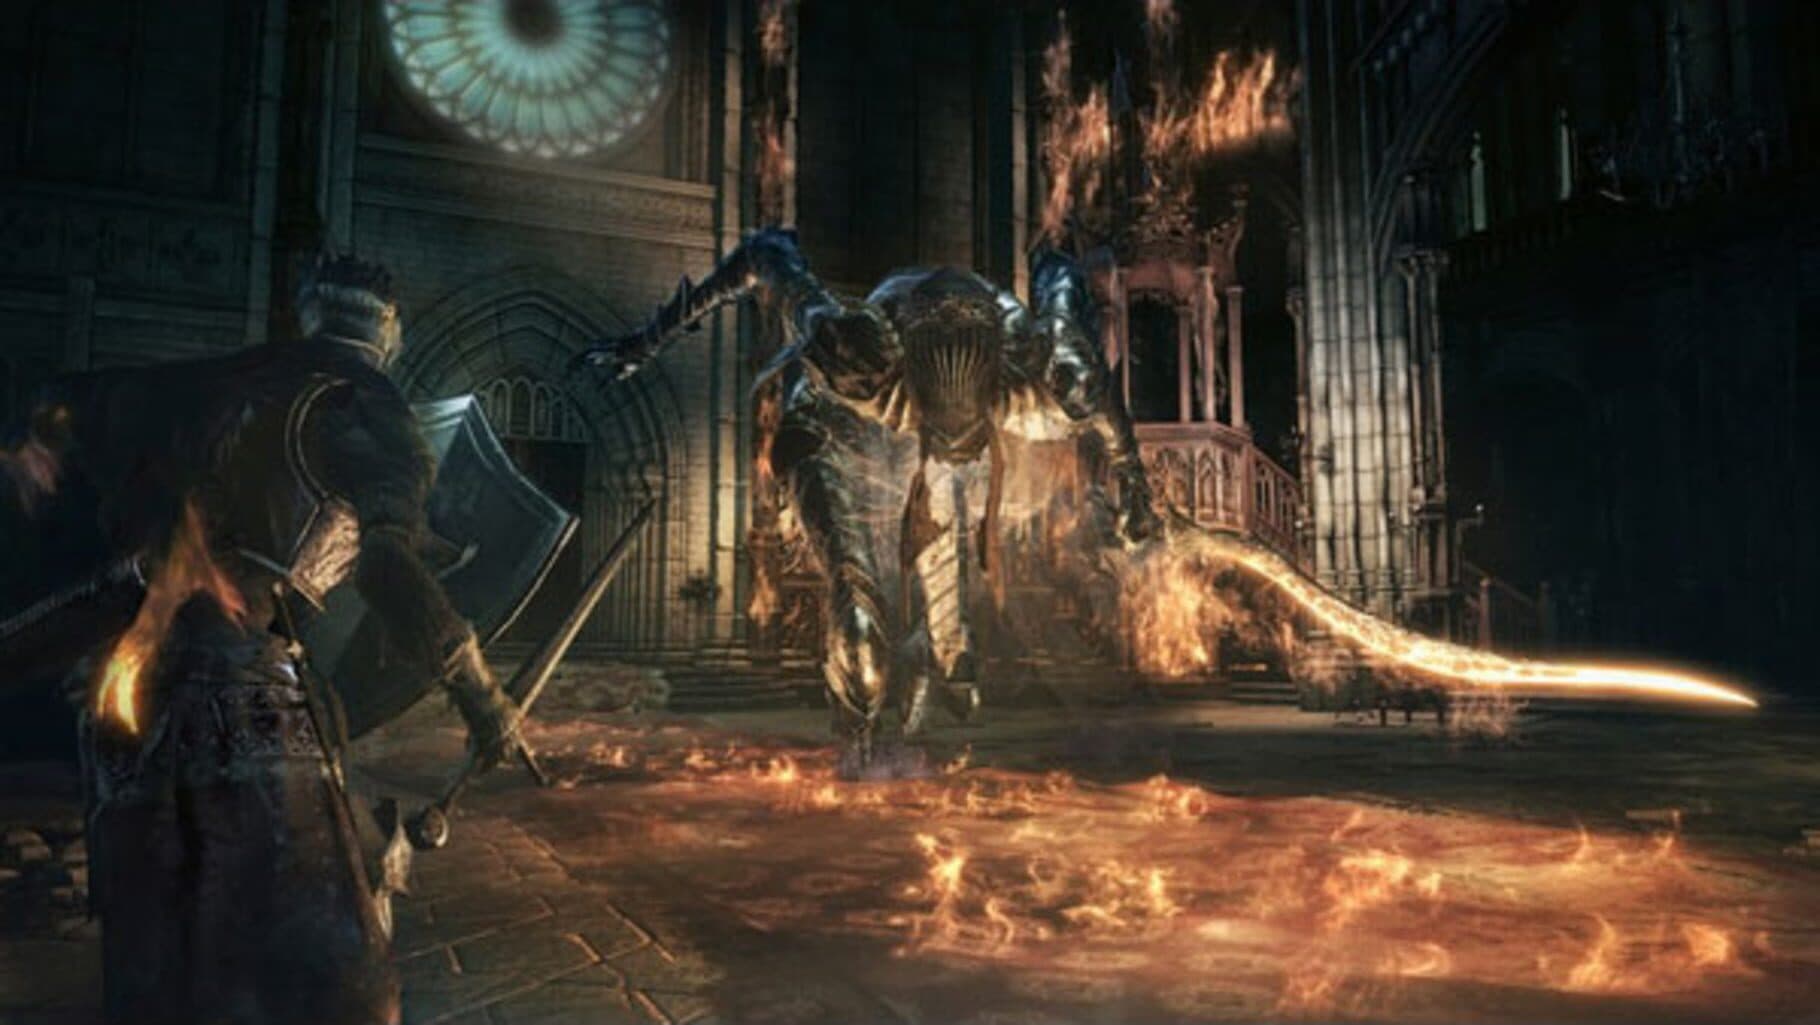 The Witcher 3: Wild Hunt + Dark Souls III Image